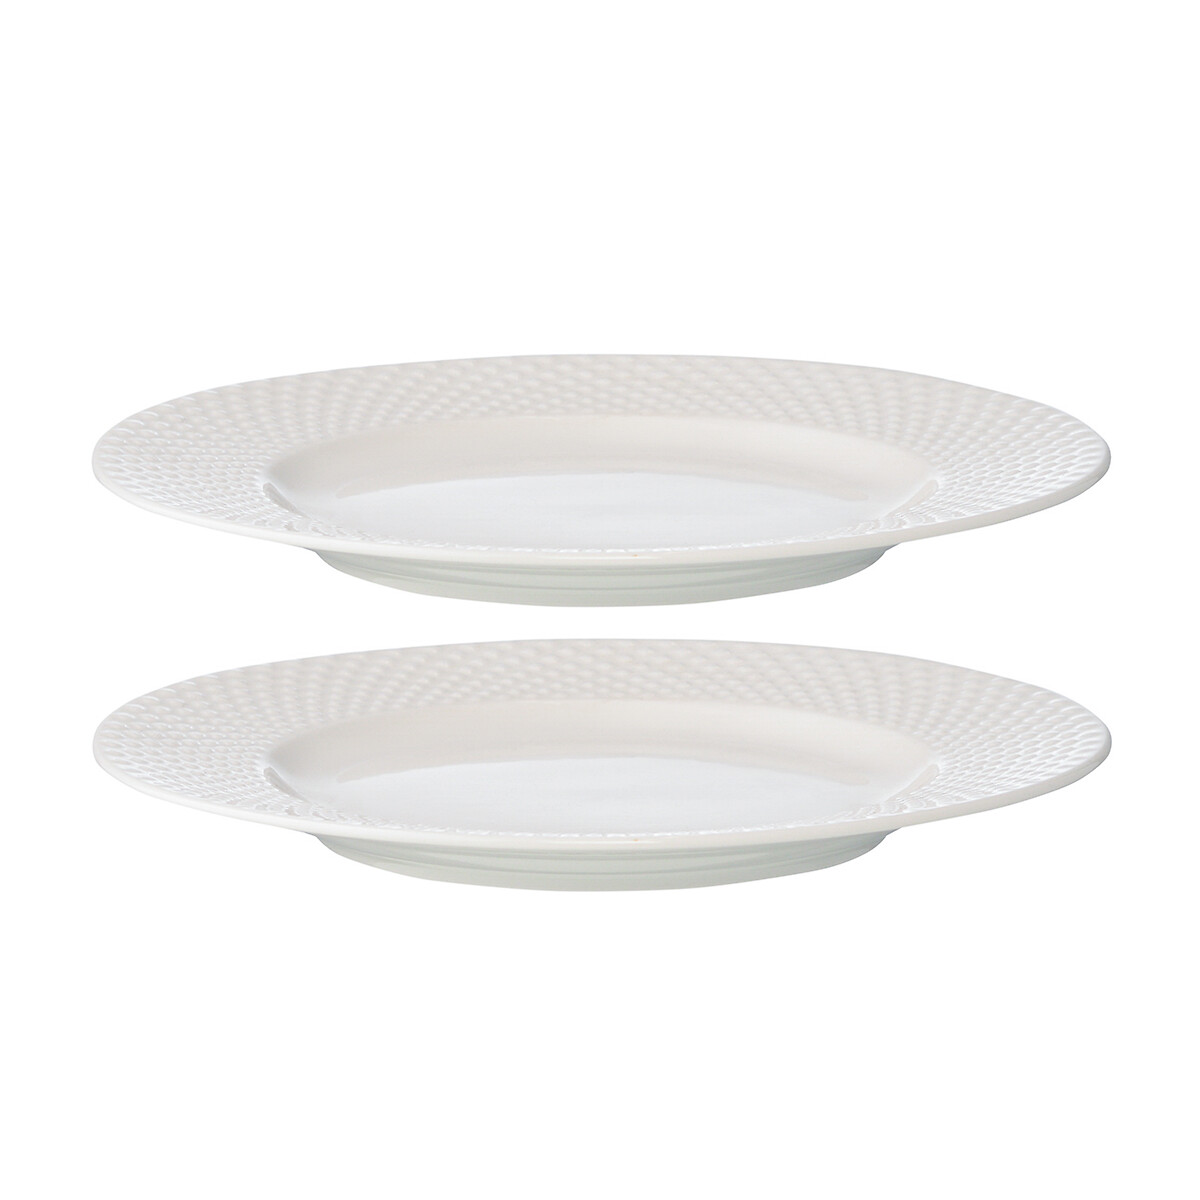 Набор из двух тарелок Essential единый размер белый набор из двух тарелок бежевого цвета из коллекции essential 20см единый размер бежевый